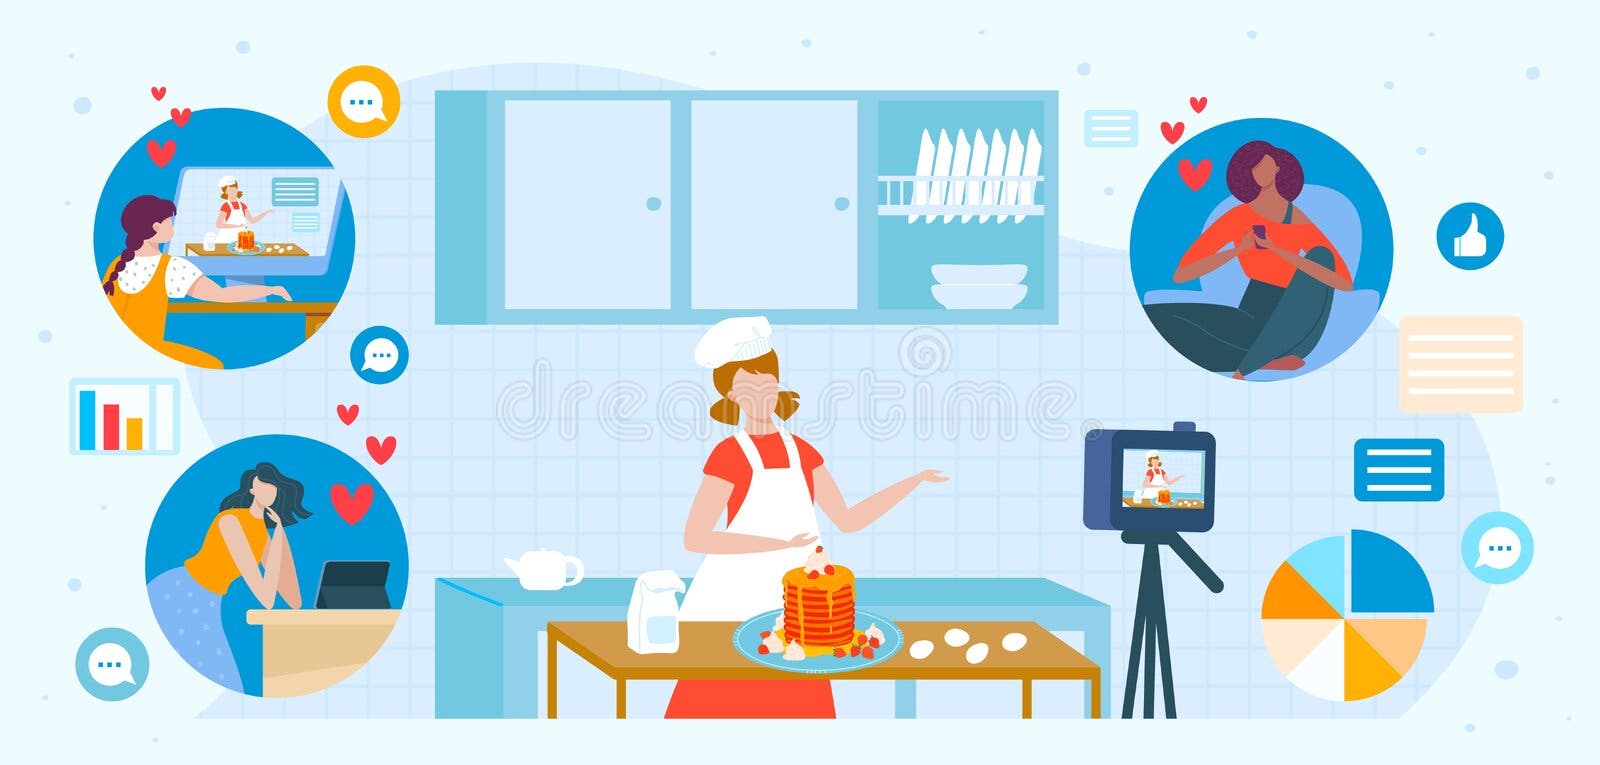 a criança faz um jogo infantil - o cozinheiro prepara a comida. ilustração  em vetor desenho animado isolada 3695260 Vetor no Vecteezy